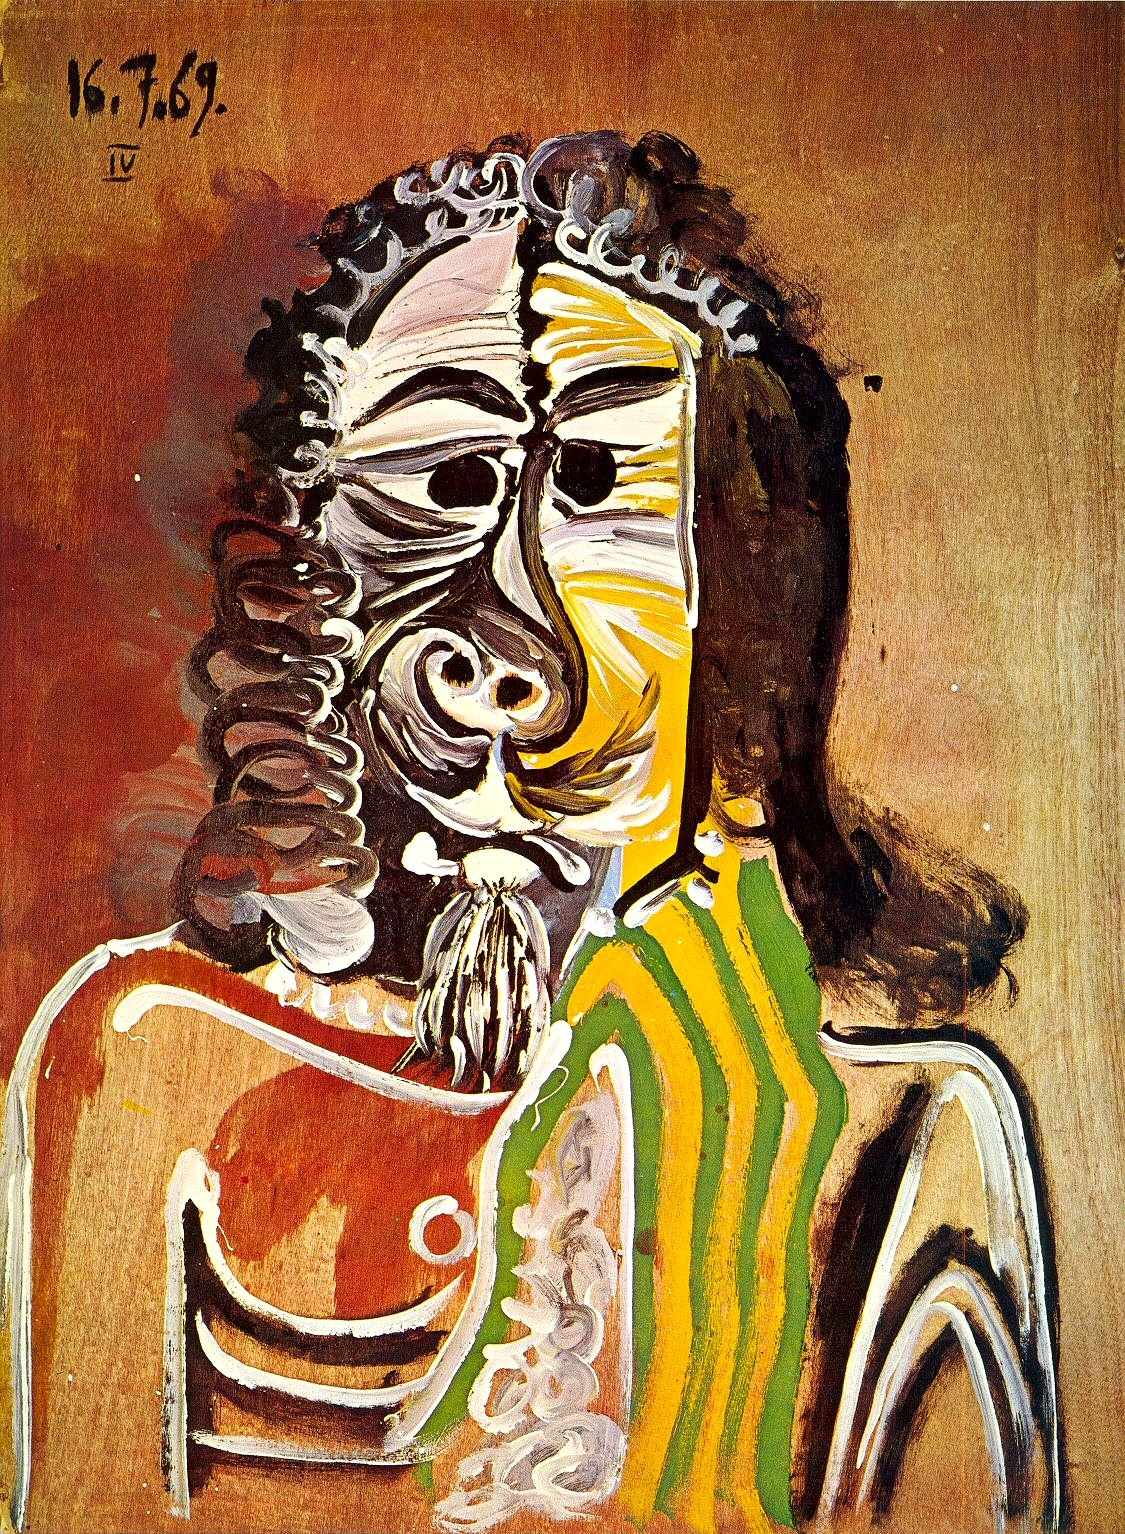 Пабло Пикассо. "Бородатый мужчина". 16.07.1969.